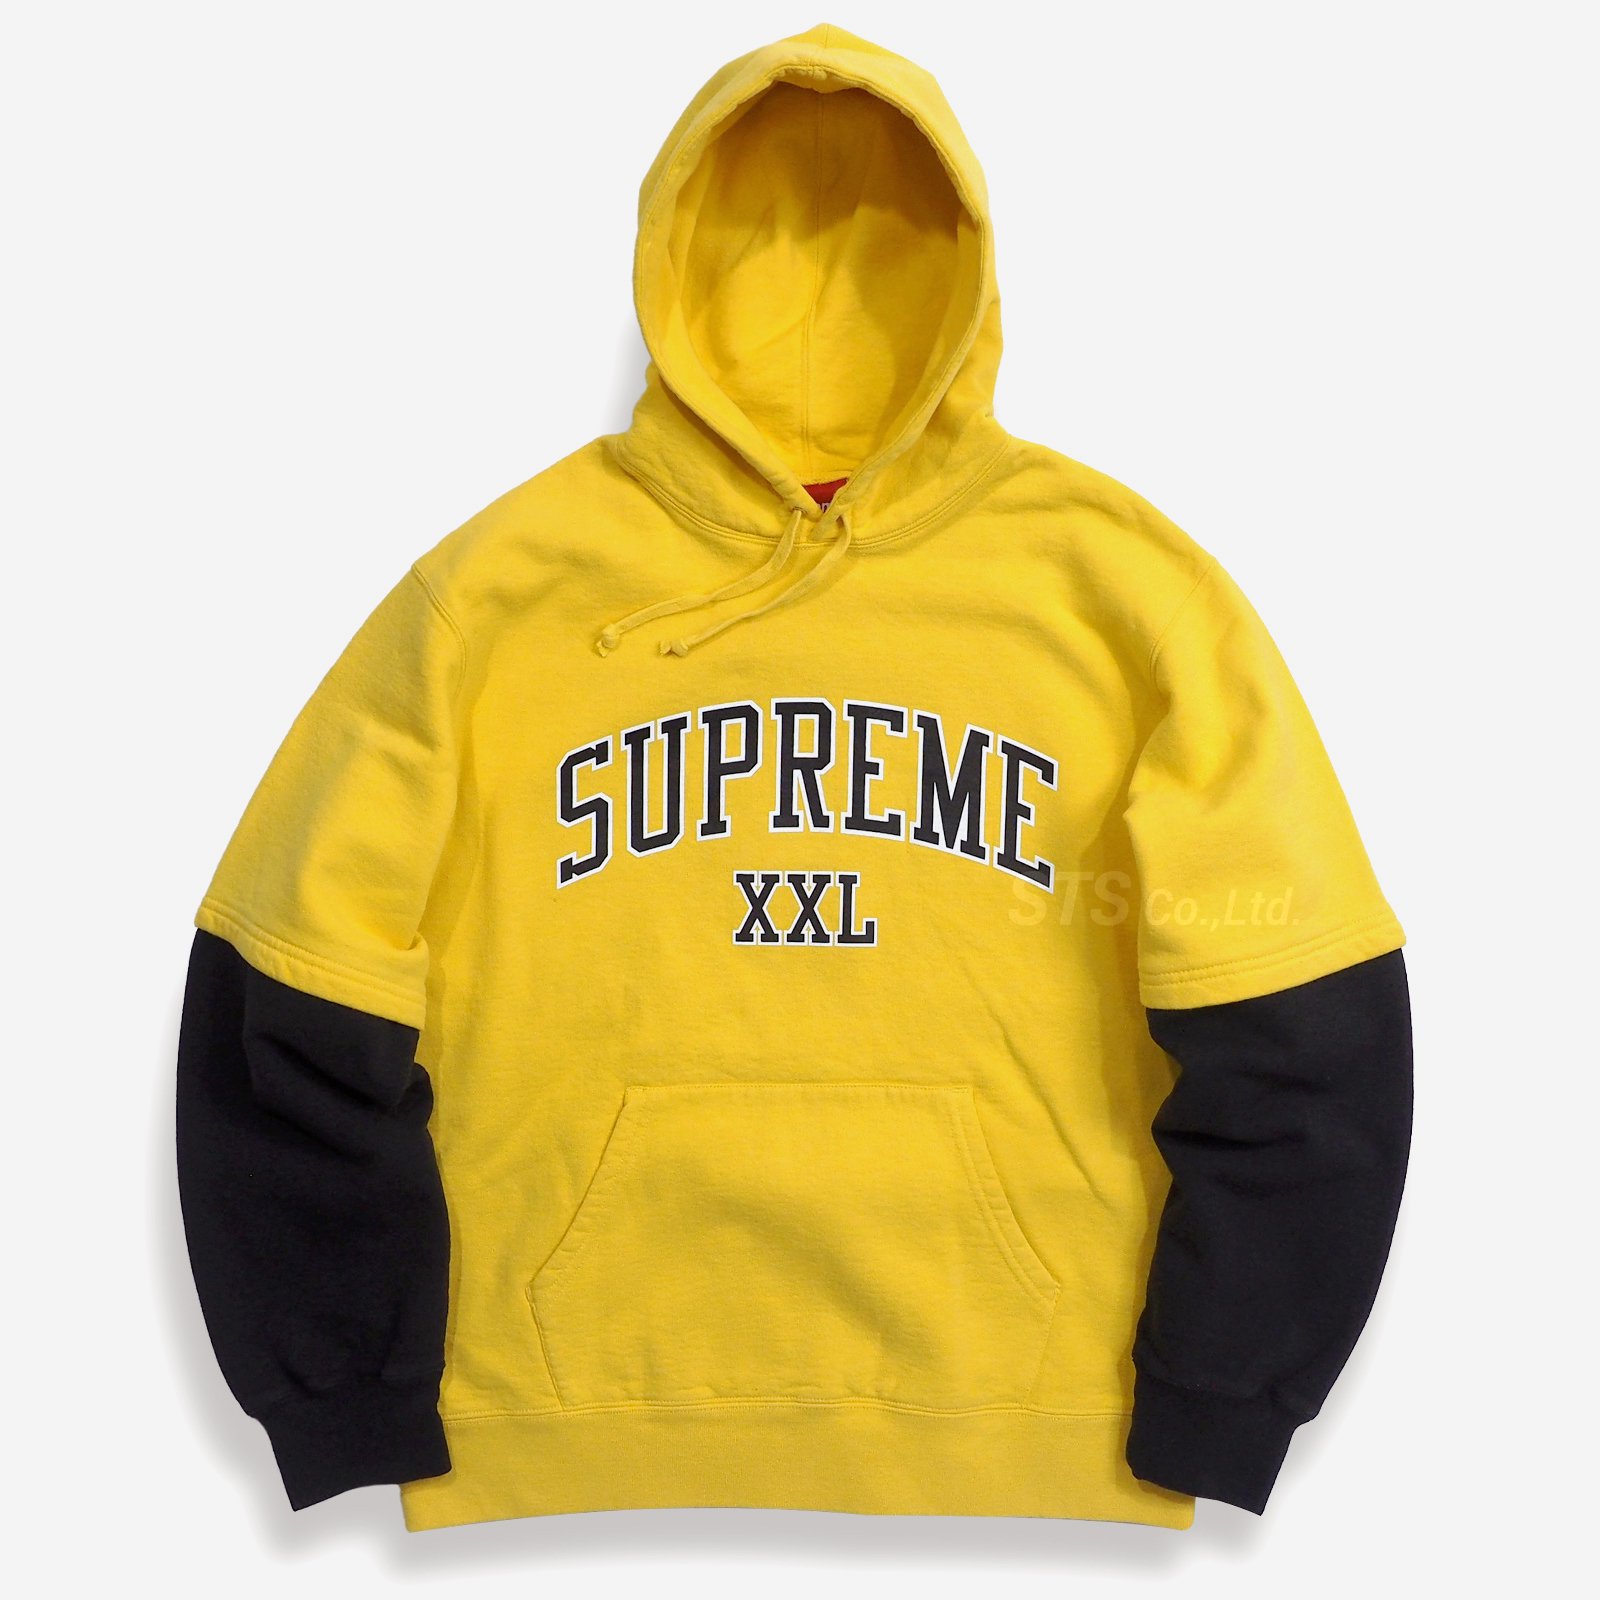 Supreme - XXL Hooded Sweatshirt - ParkSIDER